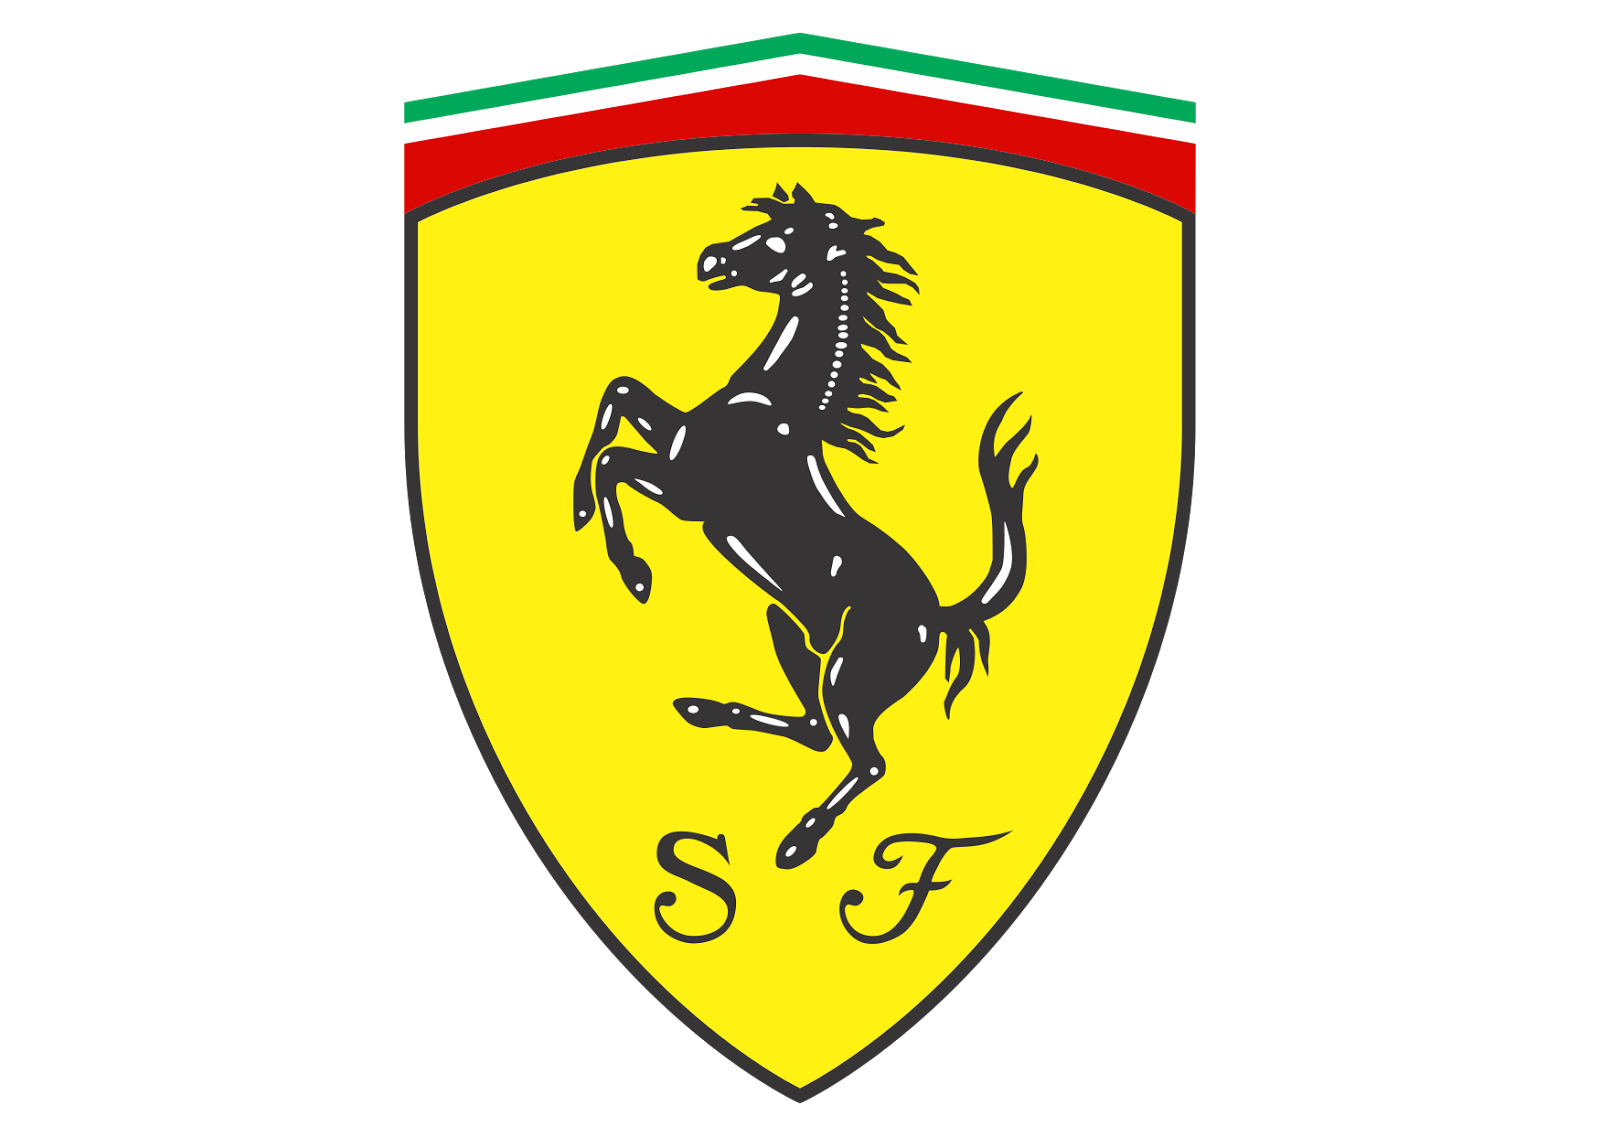 Ferrari Car Logo